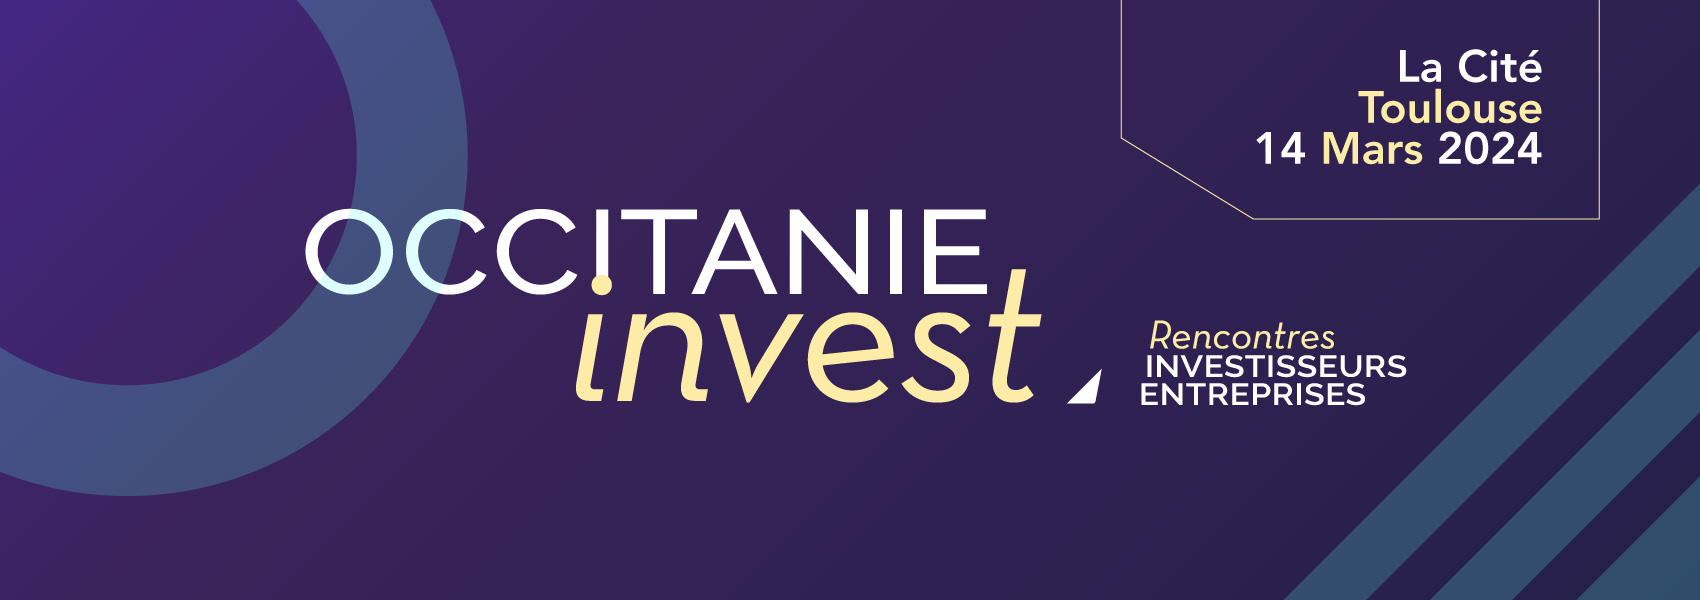 Occitanie Invest - 14 mars 2024